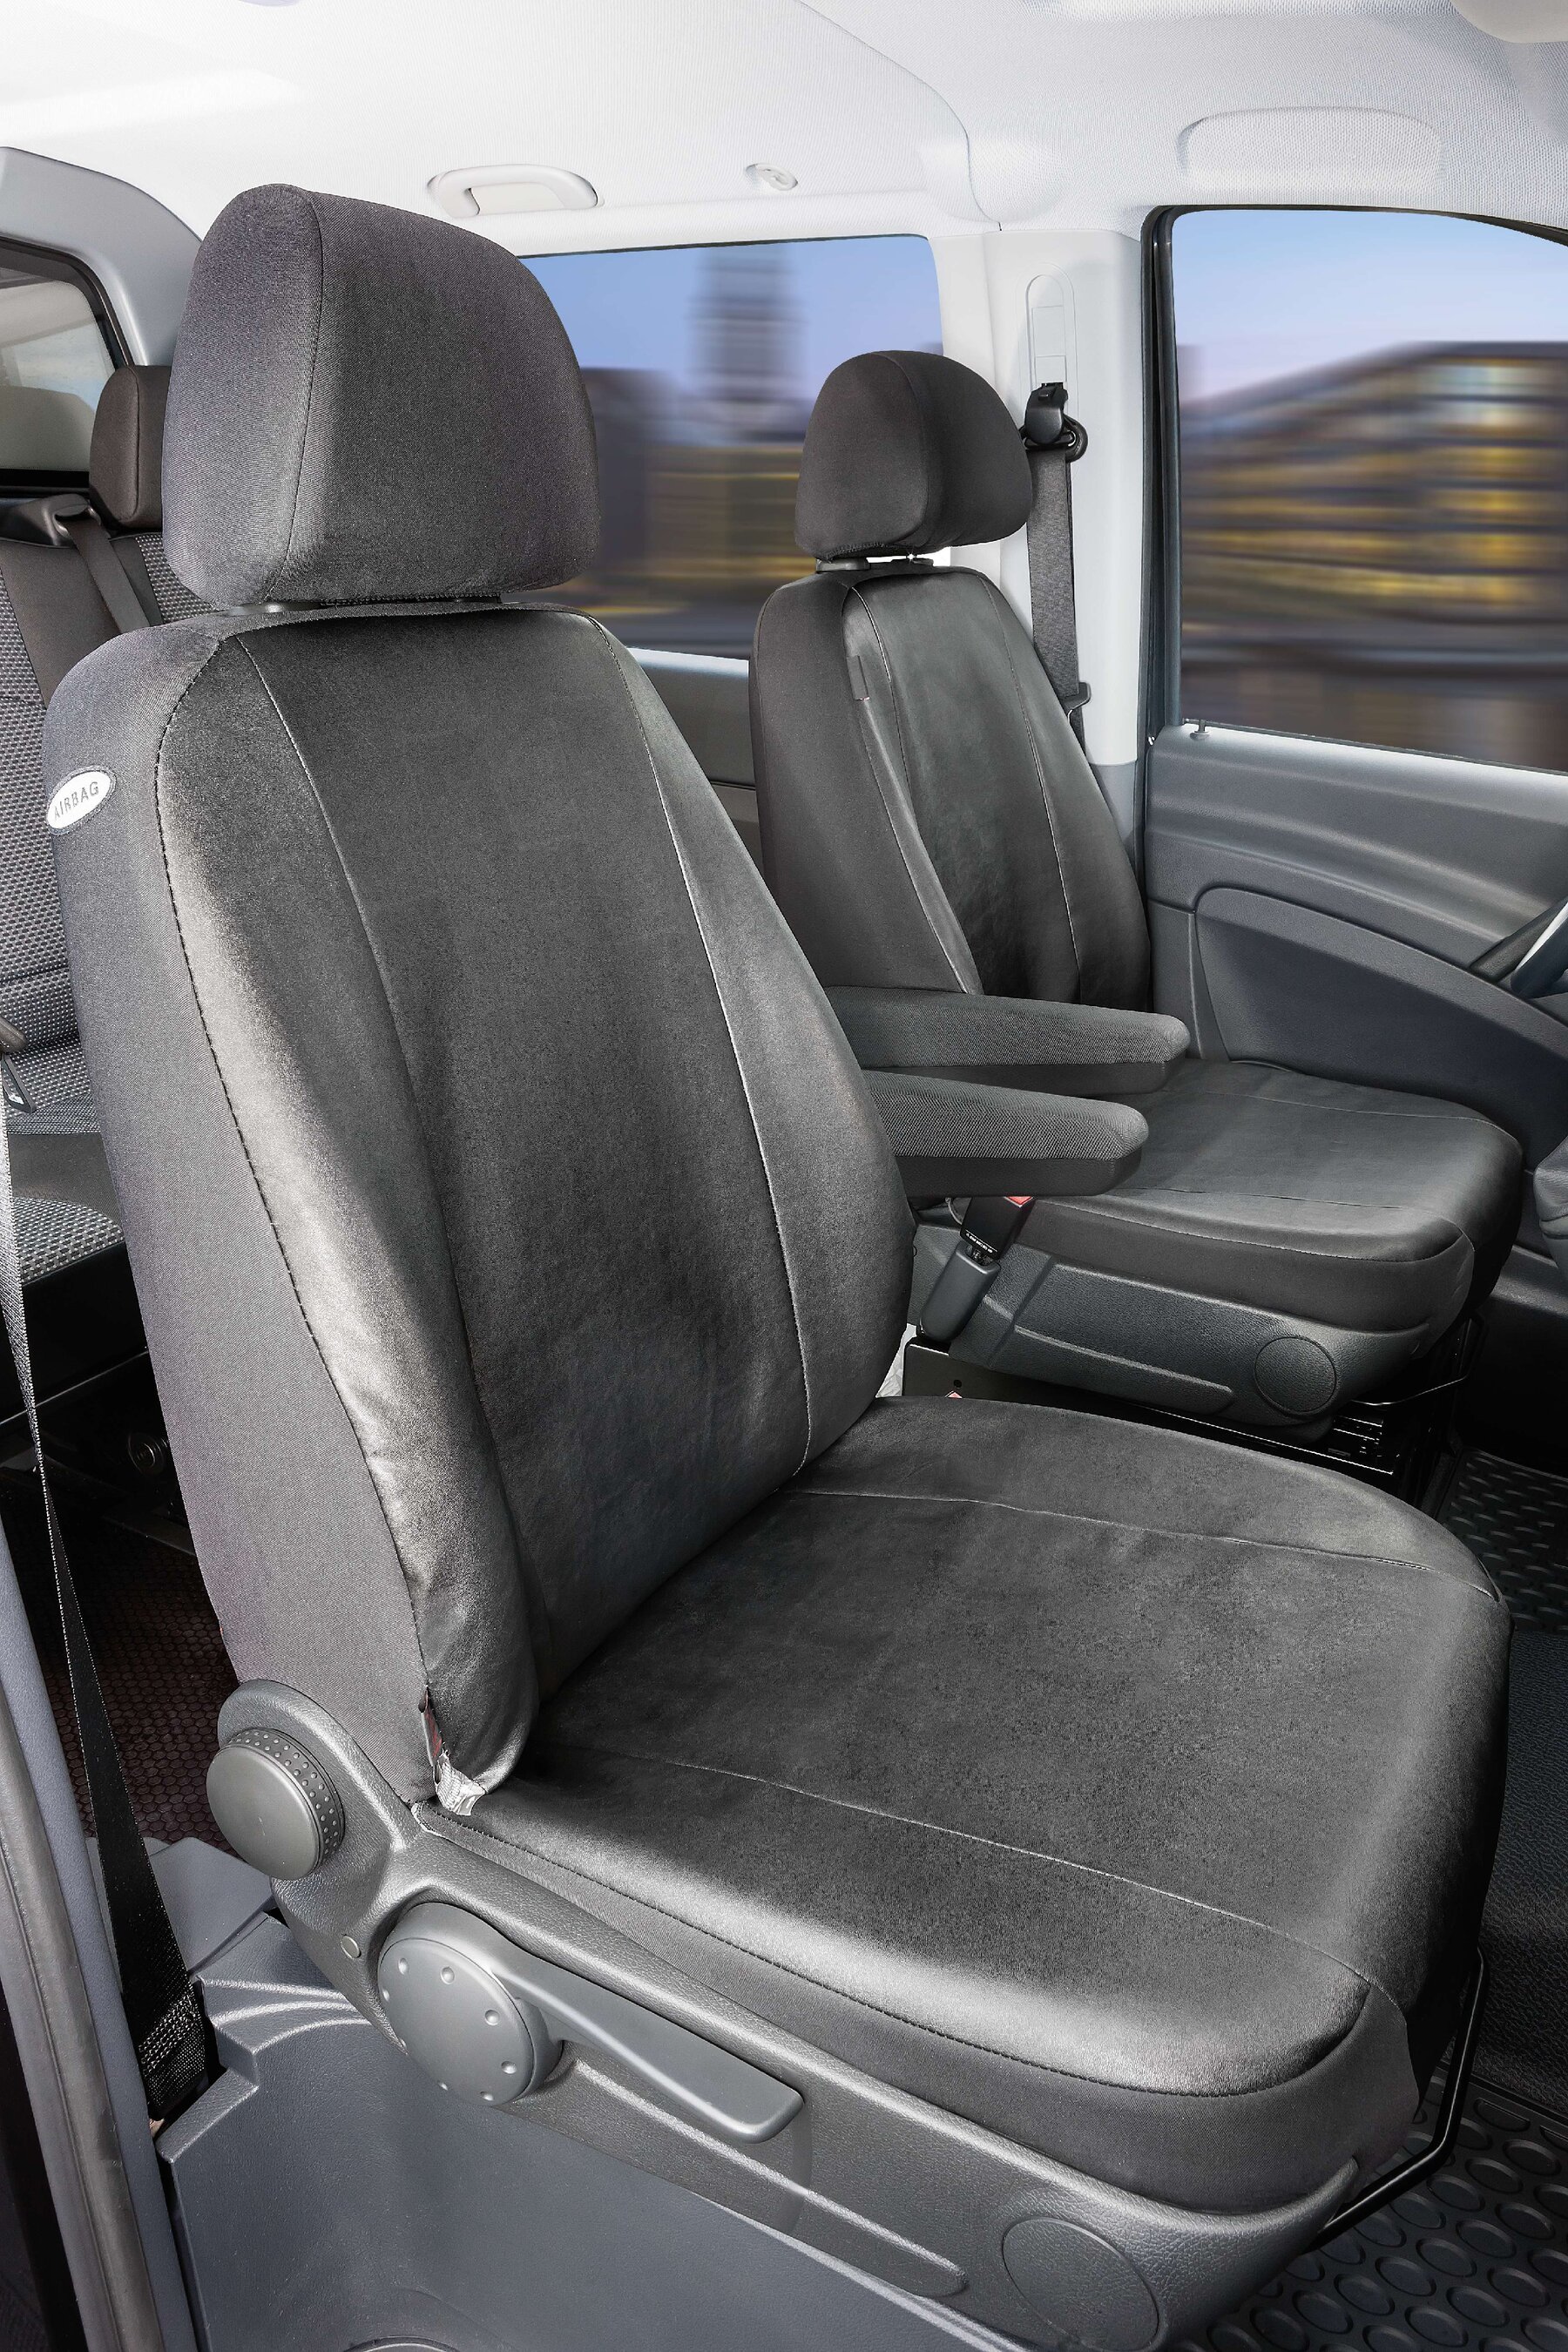 Passform Sitzbezug aus Kunstleder für Mercedes-Benz Viano/Vito, 2 Einzelsitzbezüge Armlehne innen